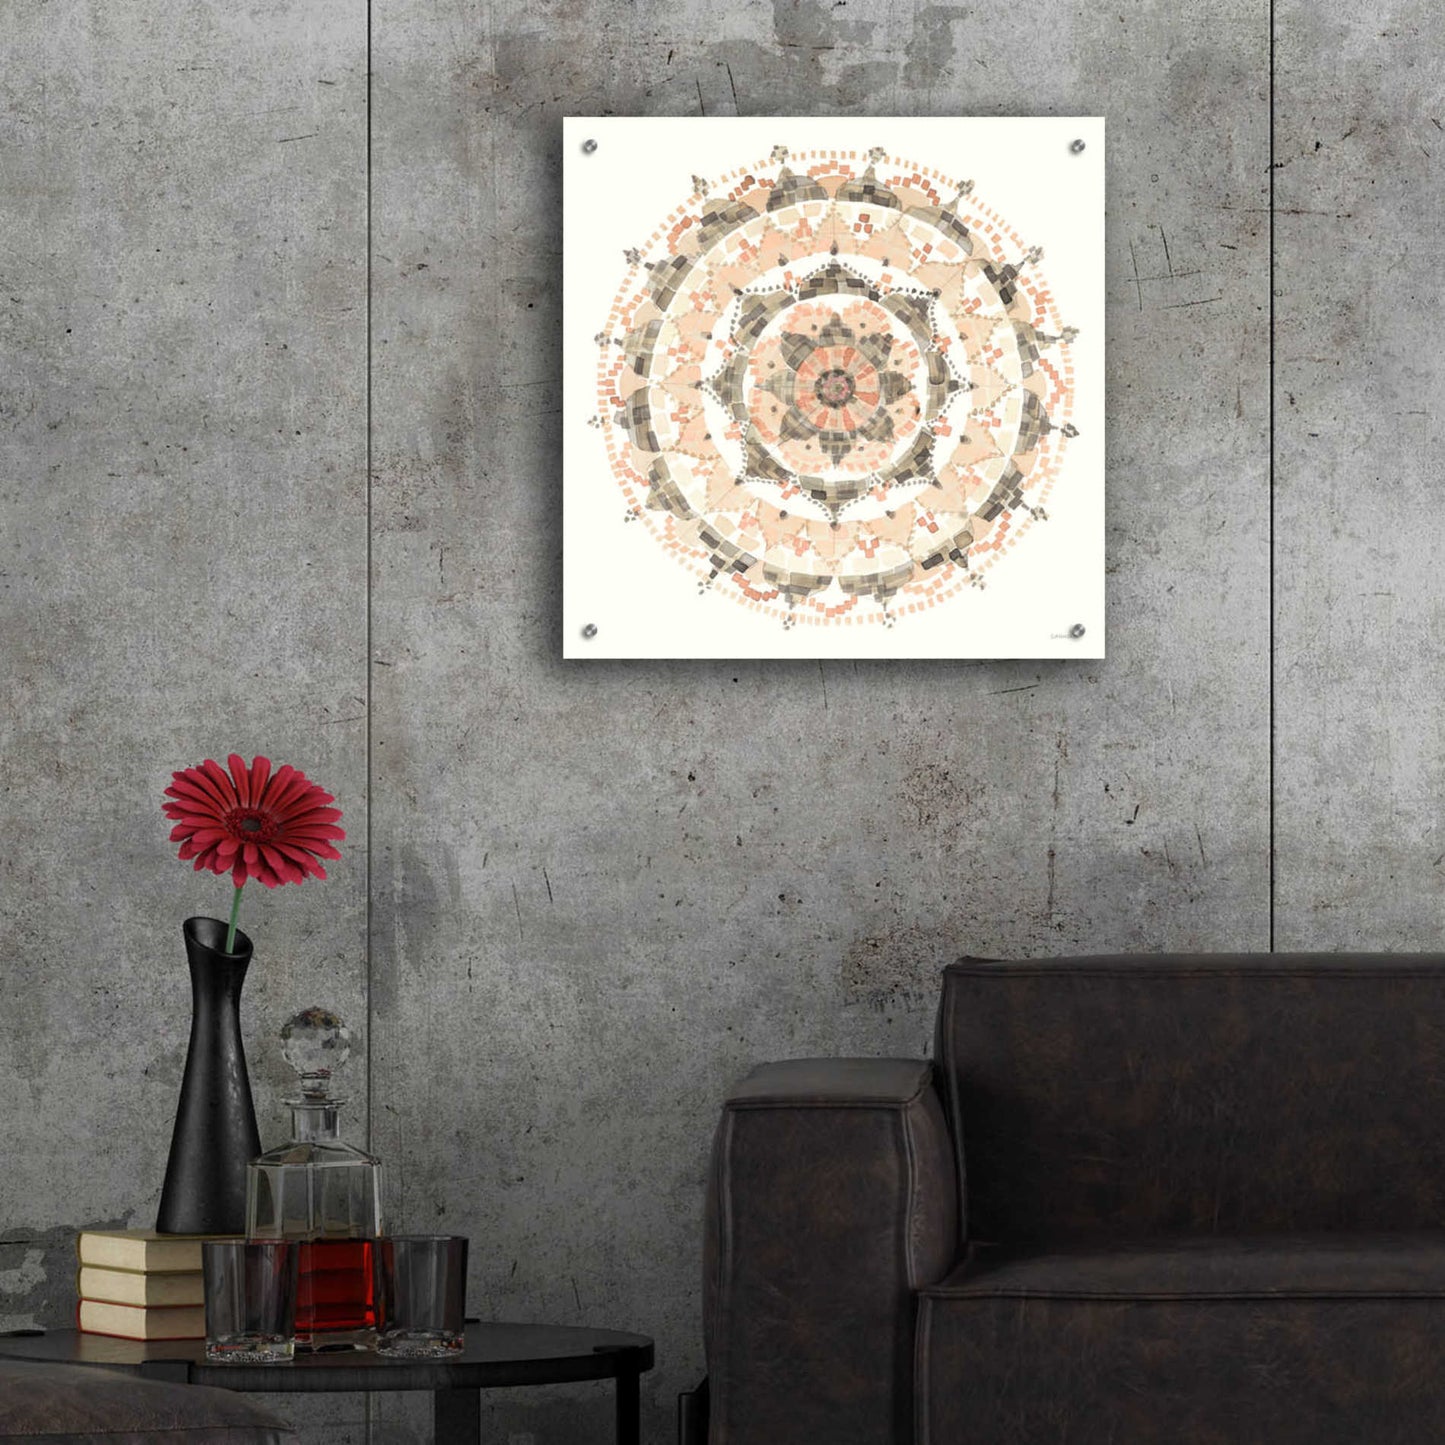 Epic Art 'Blush Mandala' by Danhui Nai, Acrylic Glass Wall Art,24x24